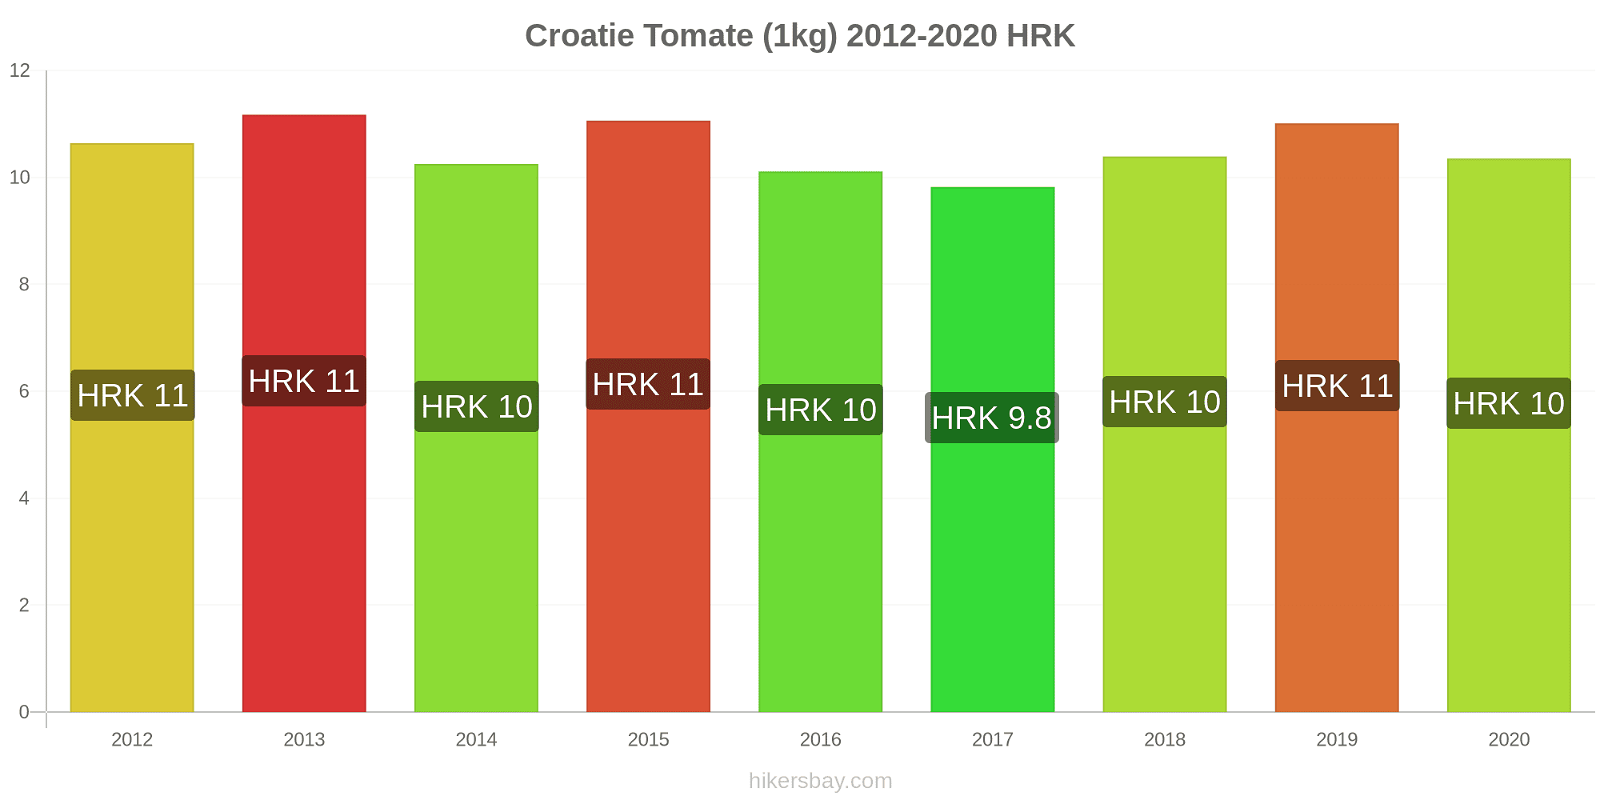 Croatie changements de prix Tomate (1kg) hikersbay.com